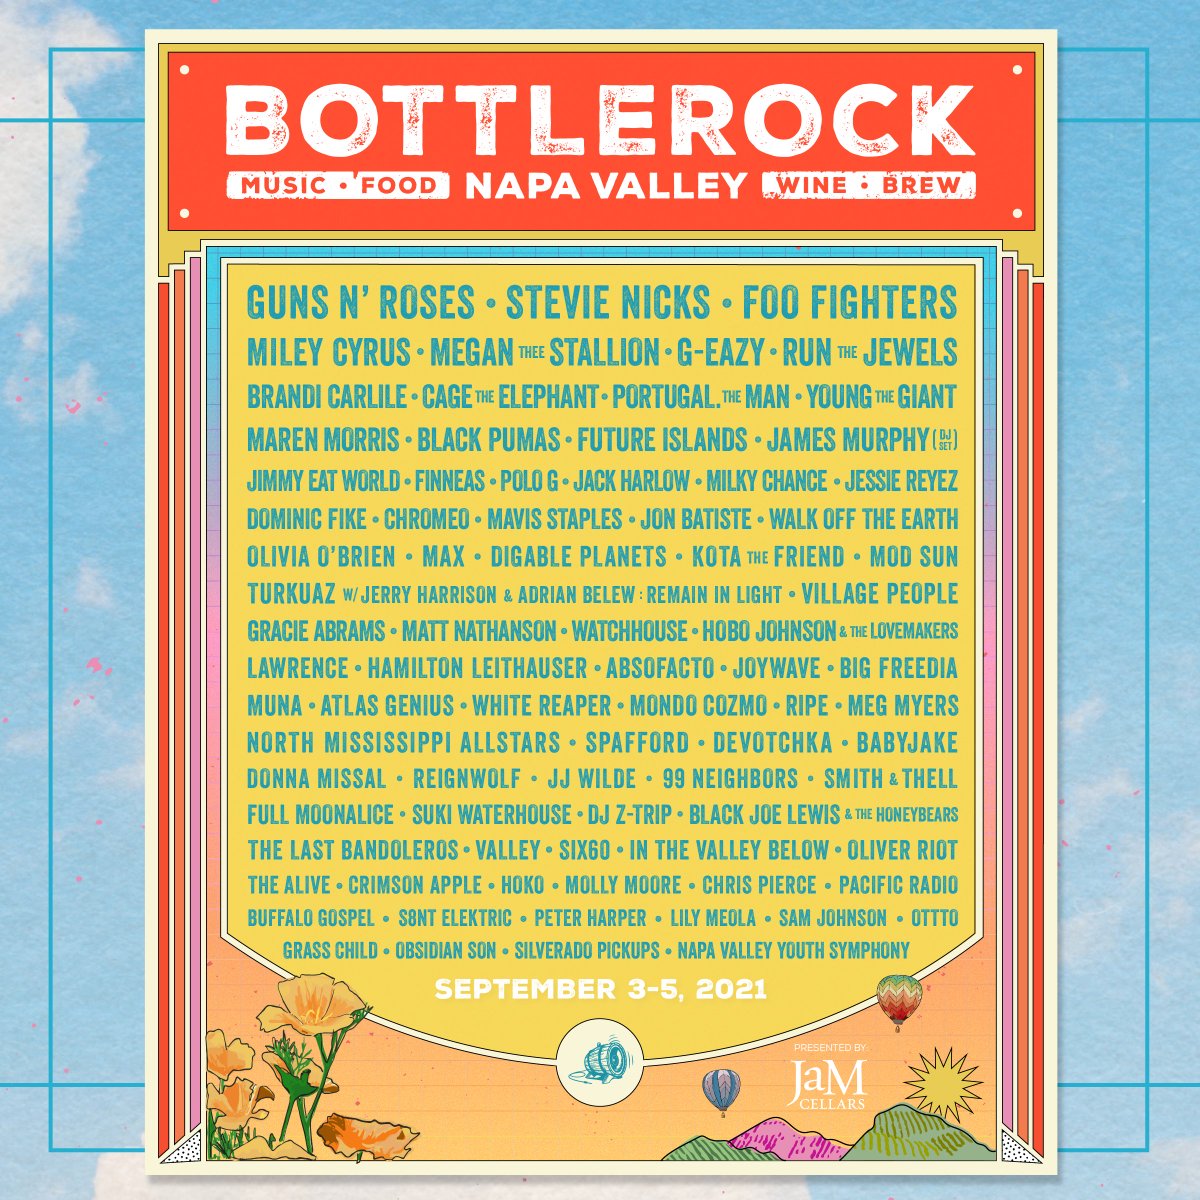 BottleRock 2021 lineup